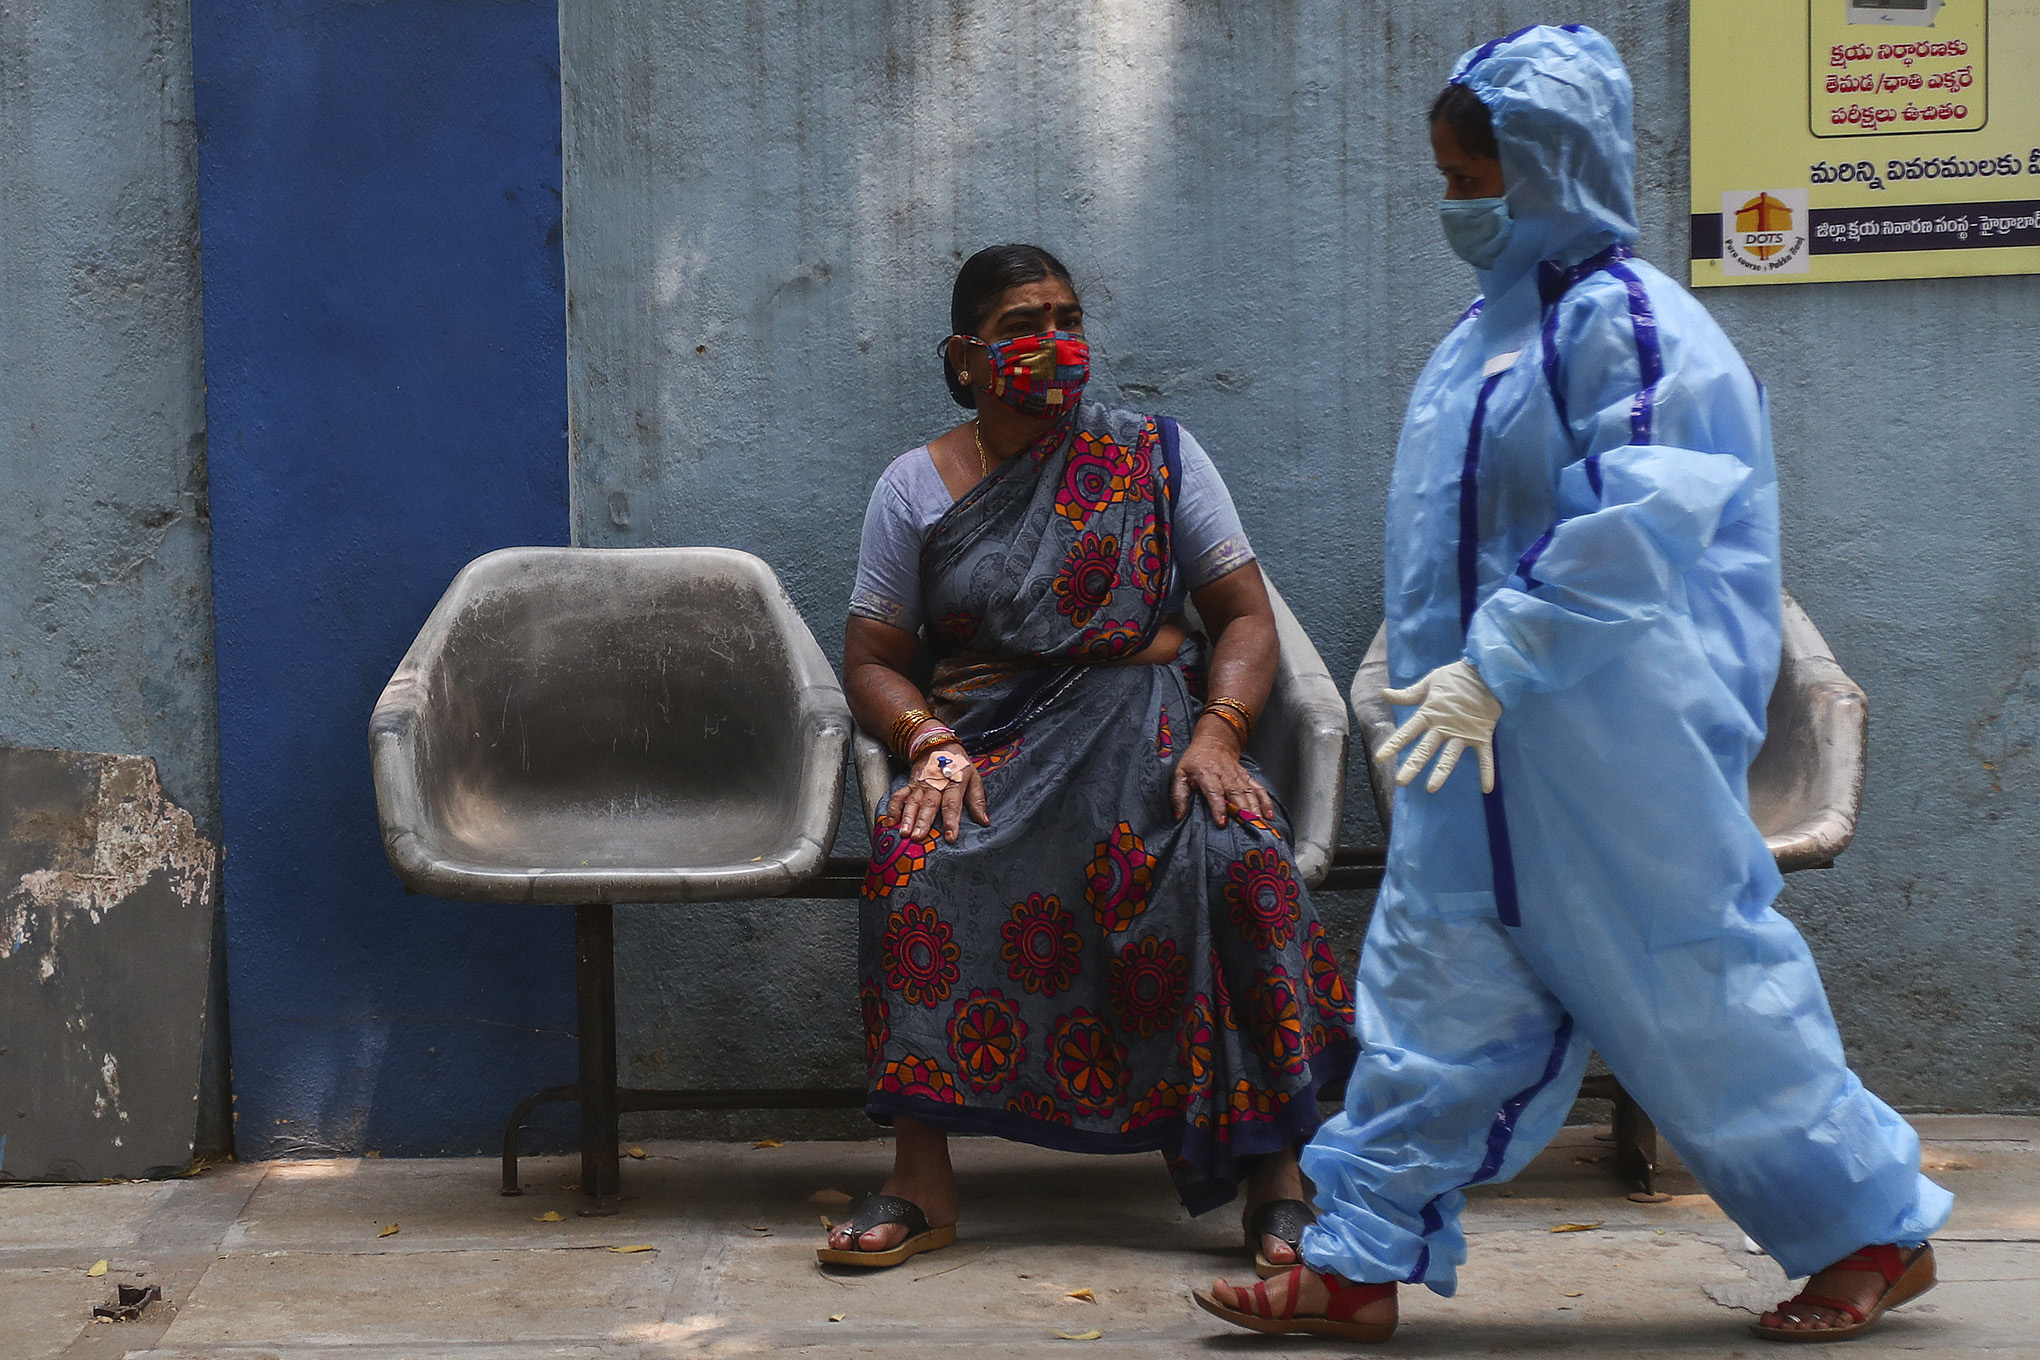 Alerta en India: detectan nueva “variante doble mutante” del coronavirus